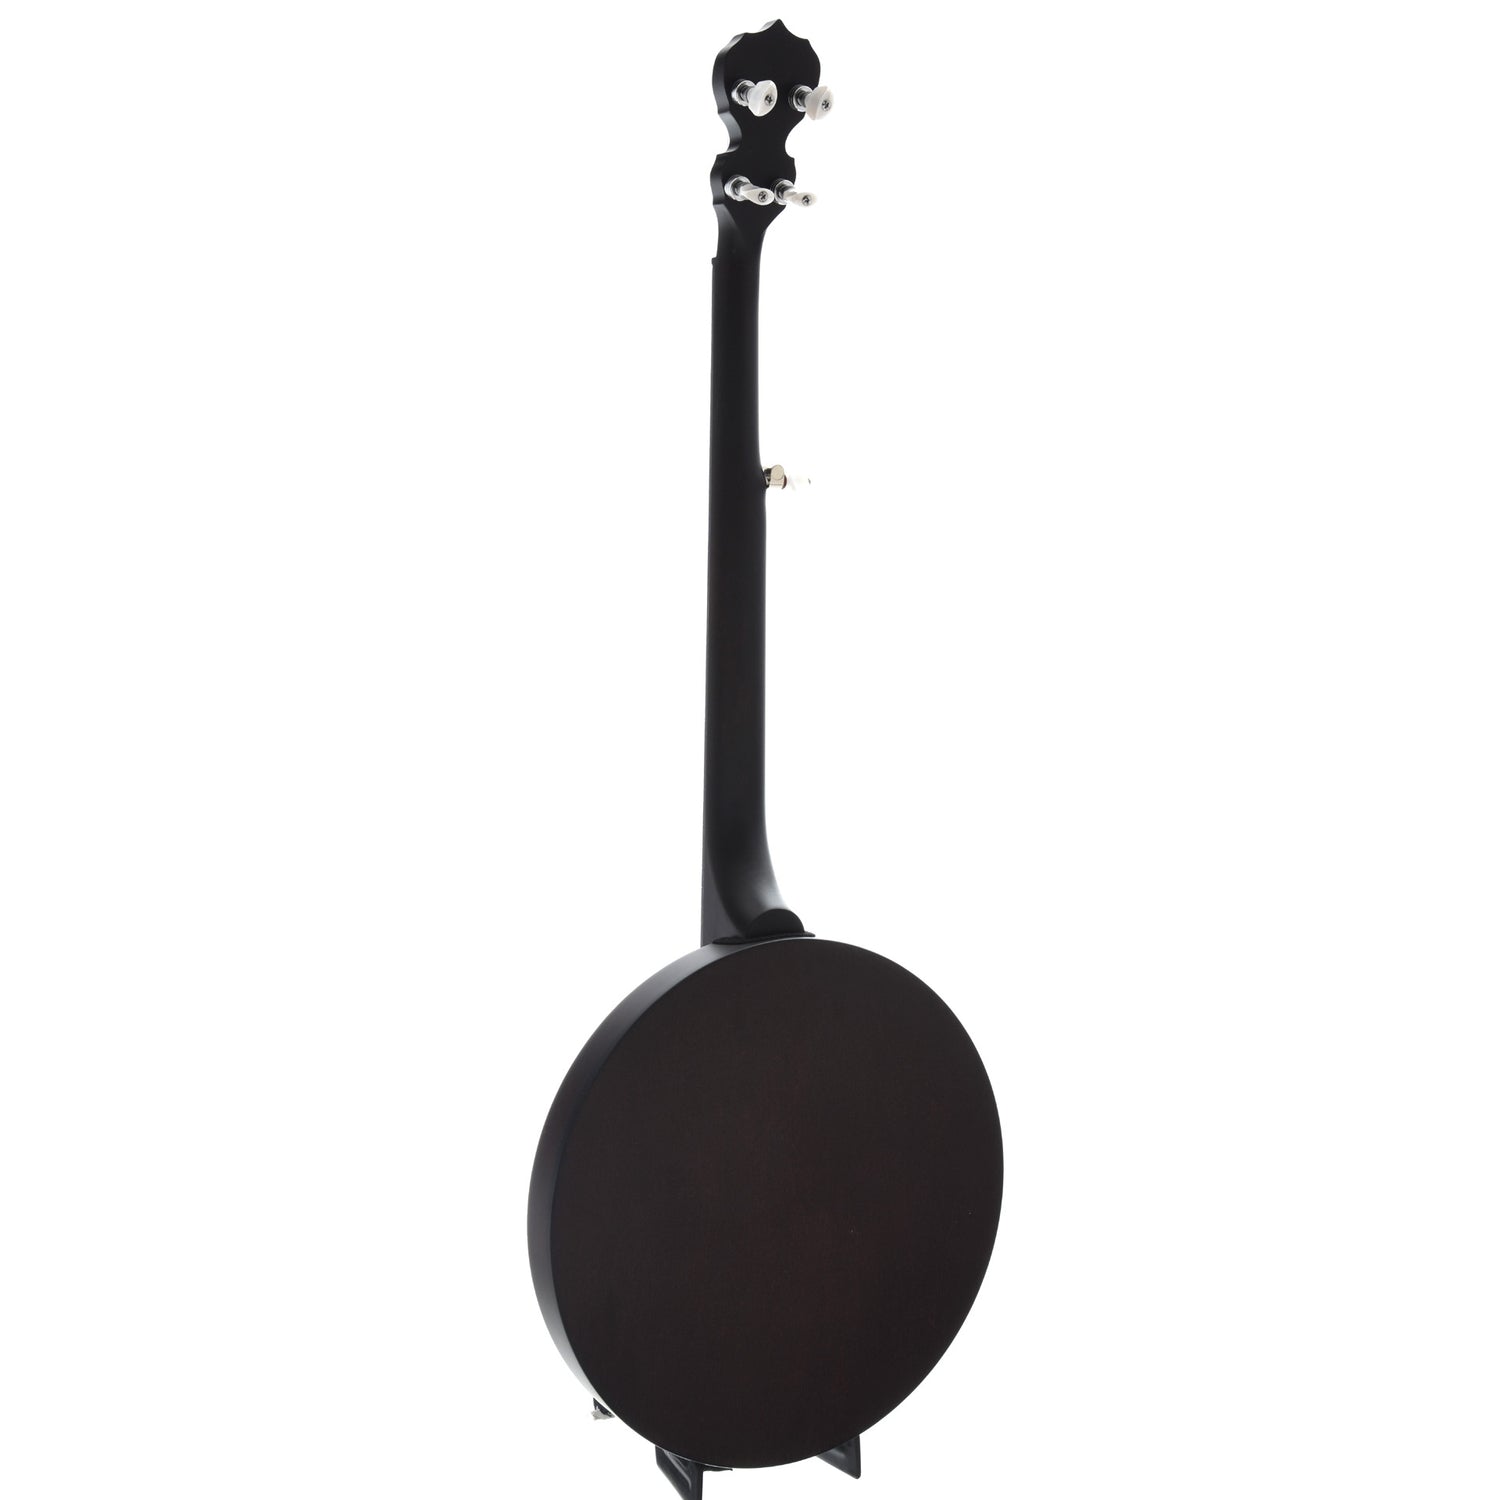 Full Back and Side of Deering Artisan Goodtime 2 Resonator Banjo